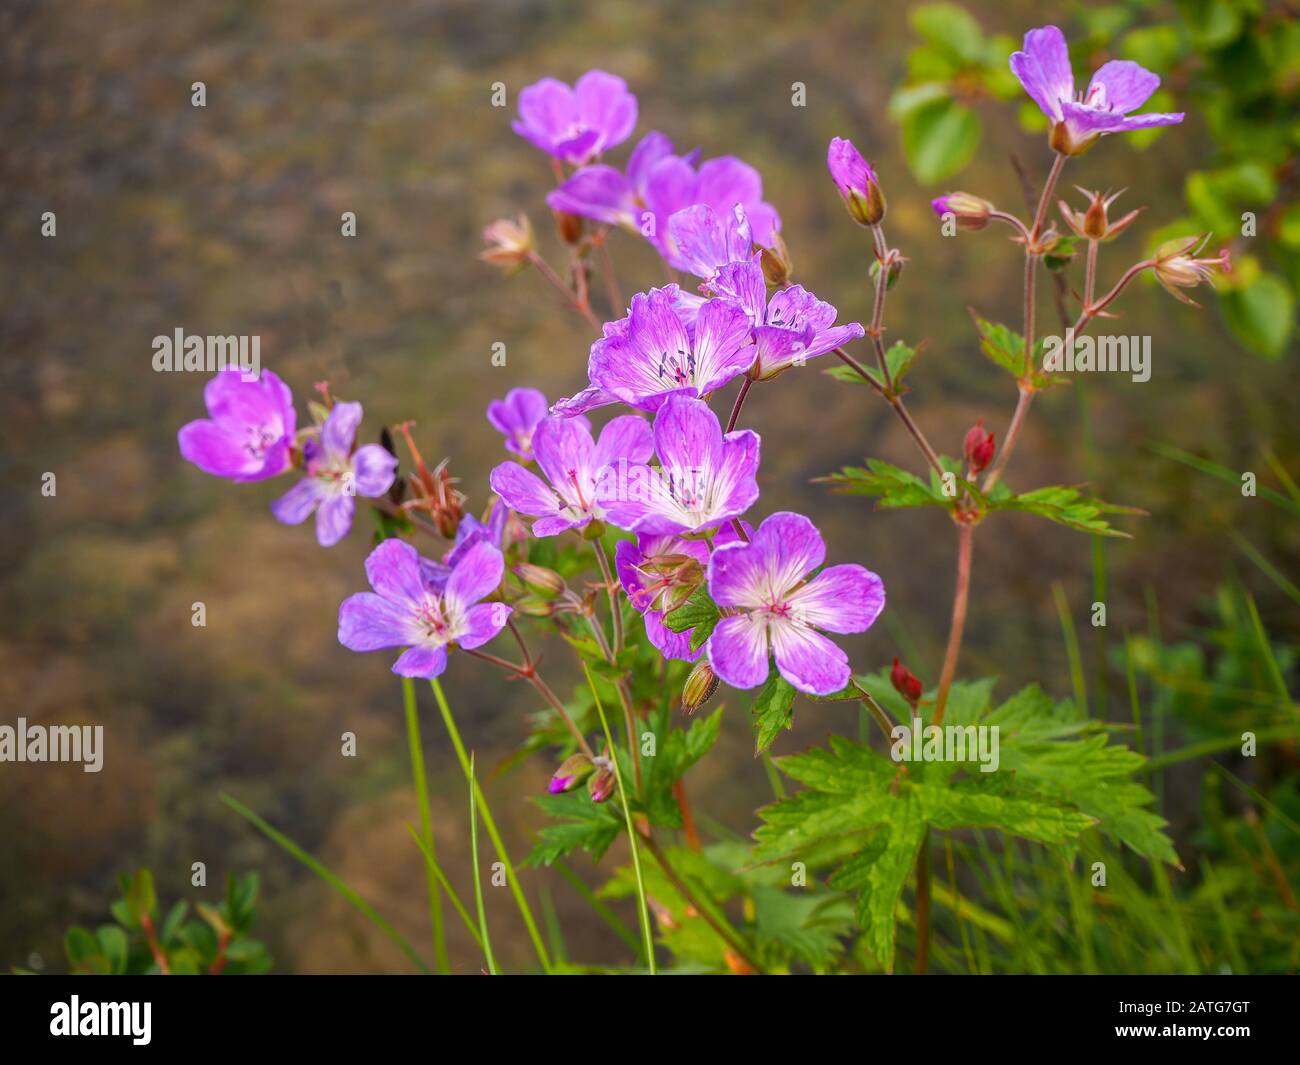 Geranio selvaggio del ranesbill del bosco, Geranium silvaticum, con i fiori rosa graziosi Foto Stock